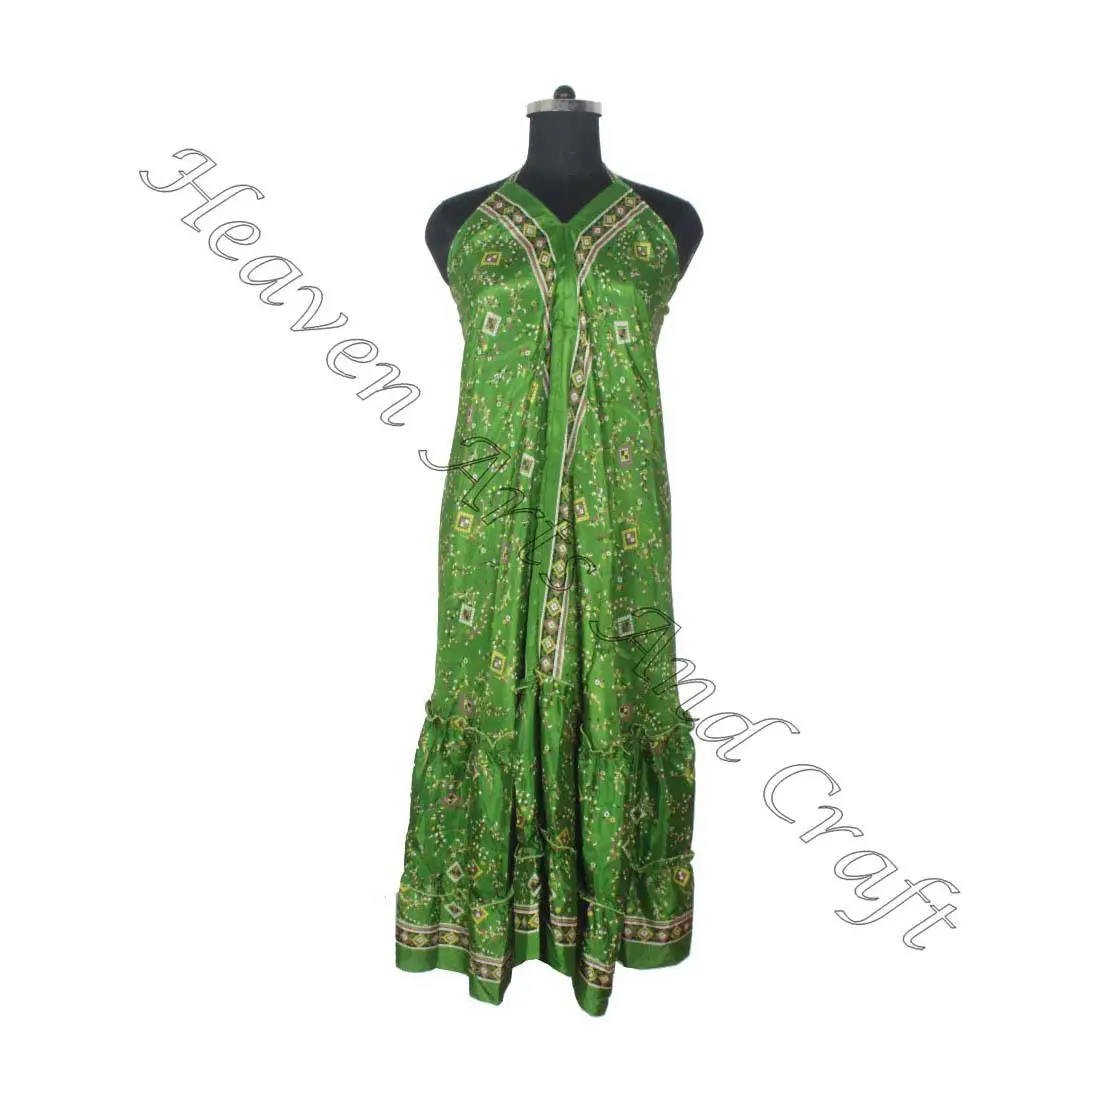 SD022 الساري / الساري / شري ملابس هندية وباكستانية من الهند هيبي بوهو مصنع وصانع ملابس النساء الساري الكلاسيكي